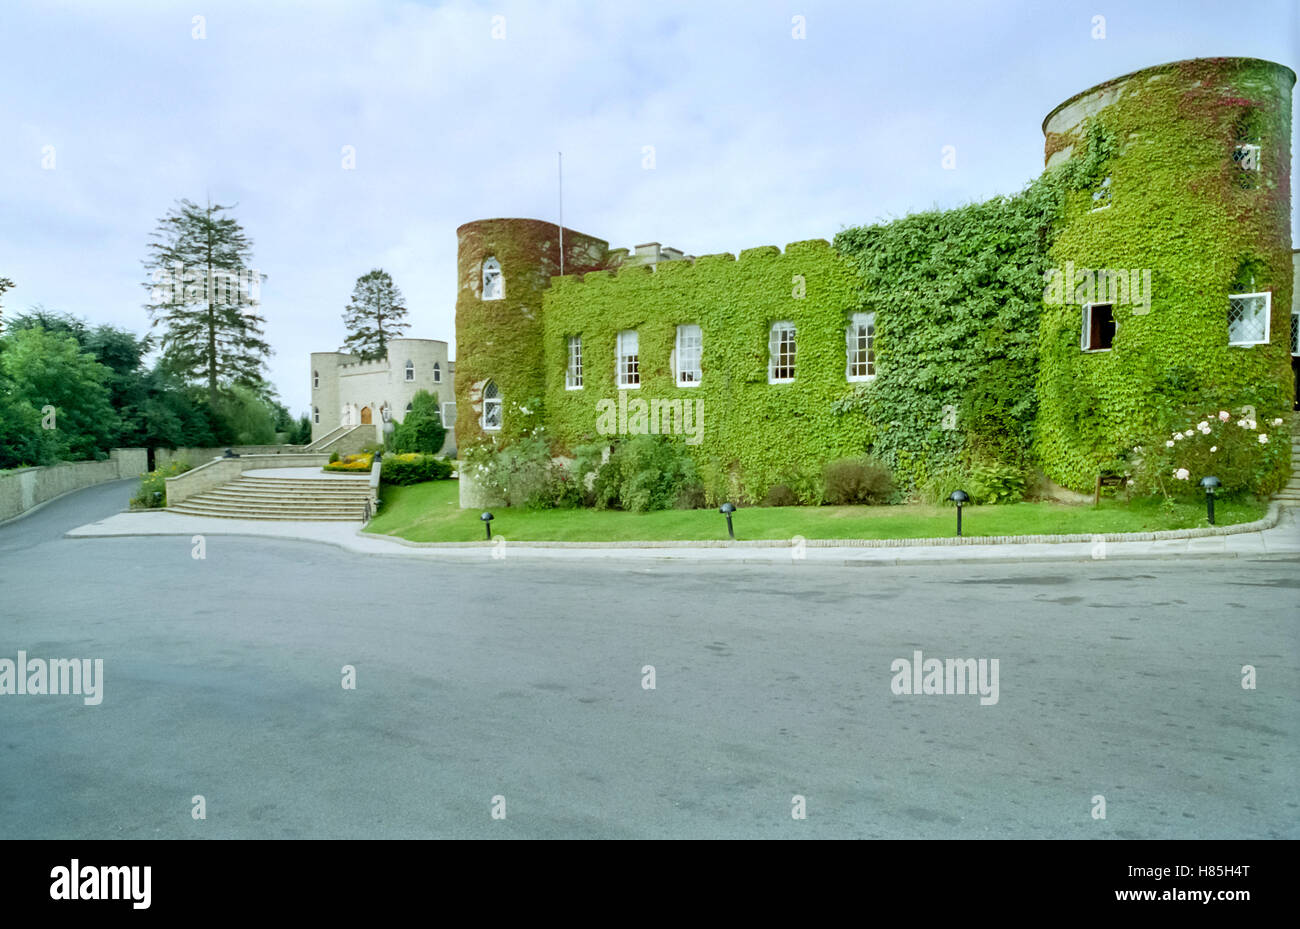 Saint Hill Manor, la sede britannica della Chiesa di Scientology. Foto Stock